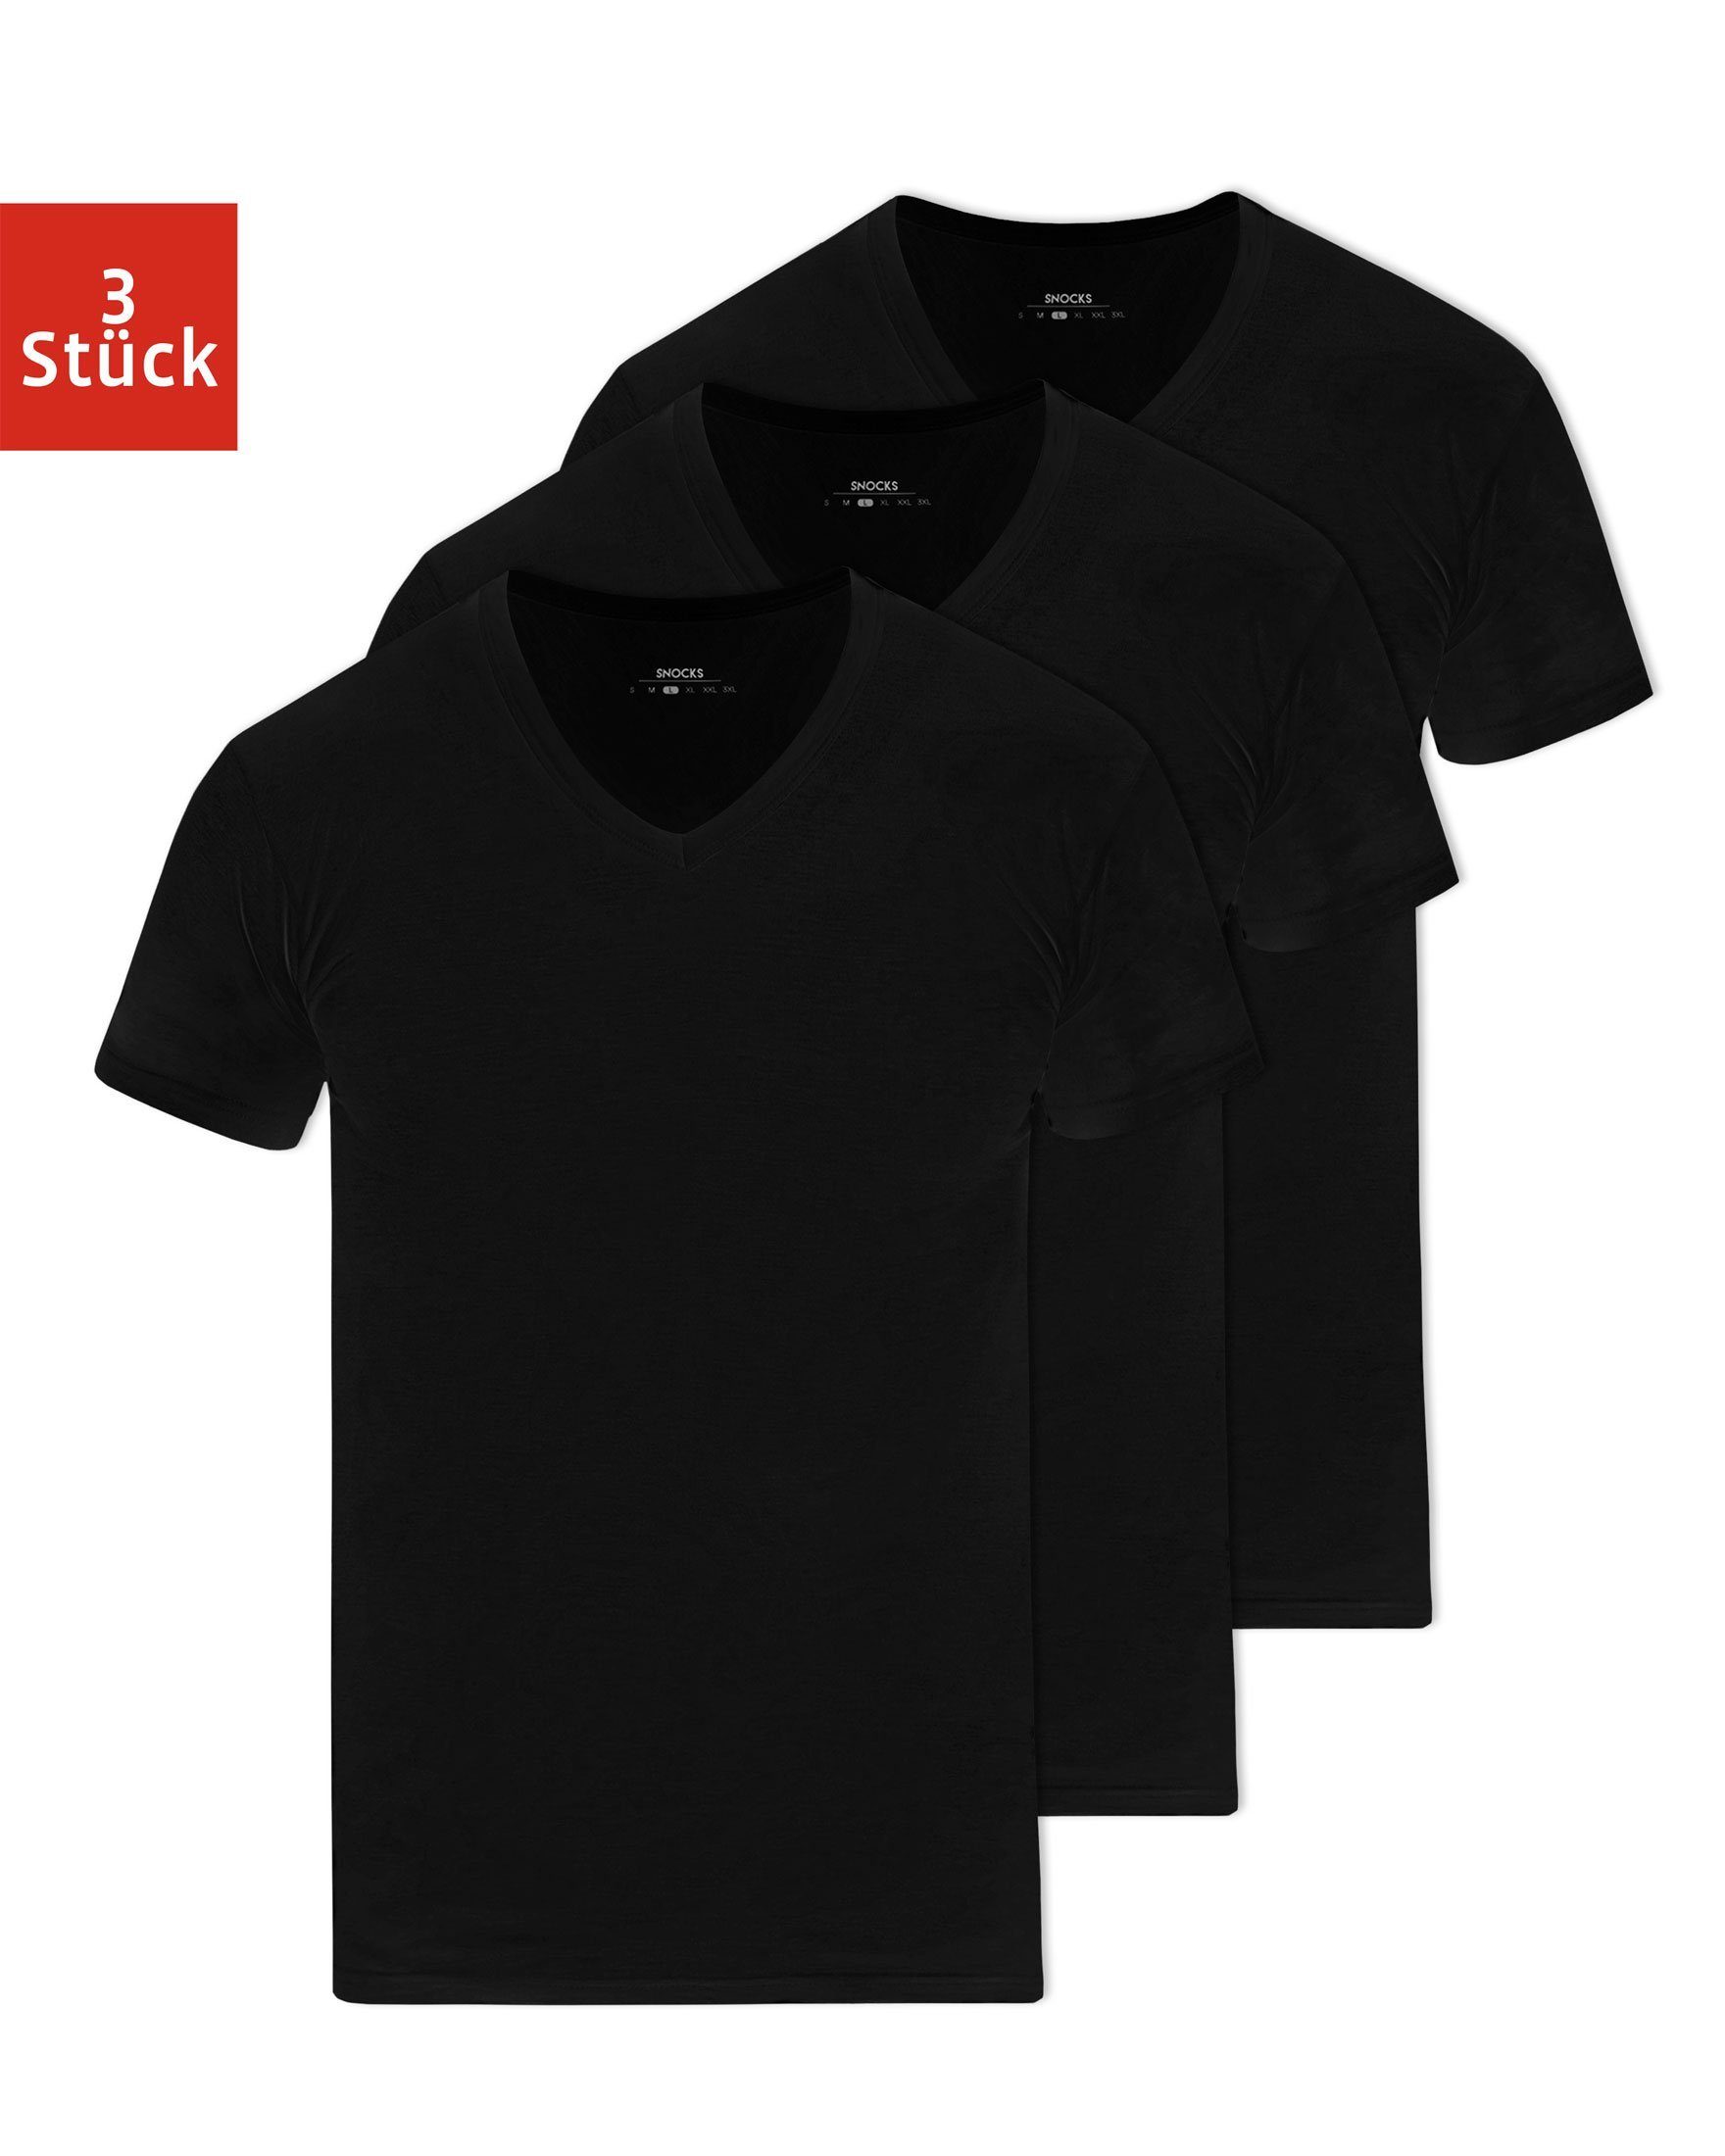 SNOCKS Unterziehshirt »T Shirt mit V-Ausschnitt Unterhemden Herren« (3  Stück, 3-St) aus Bio-Baumwolle, extra lang geschnitten